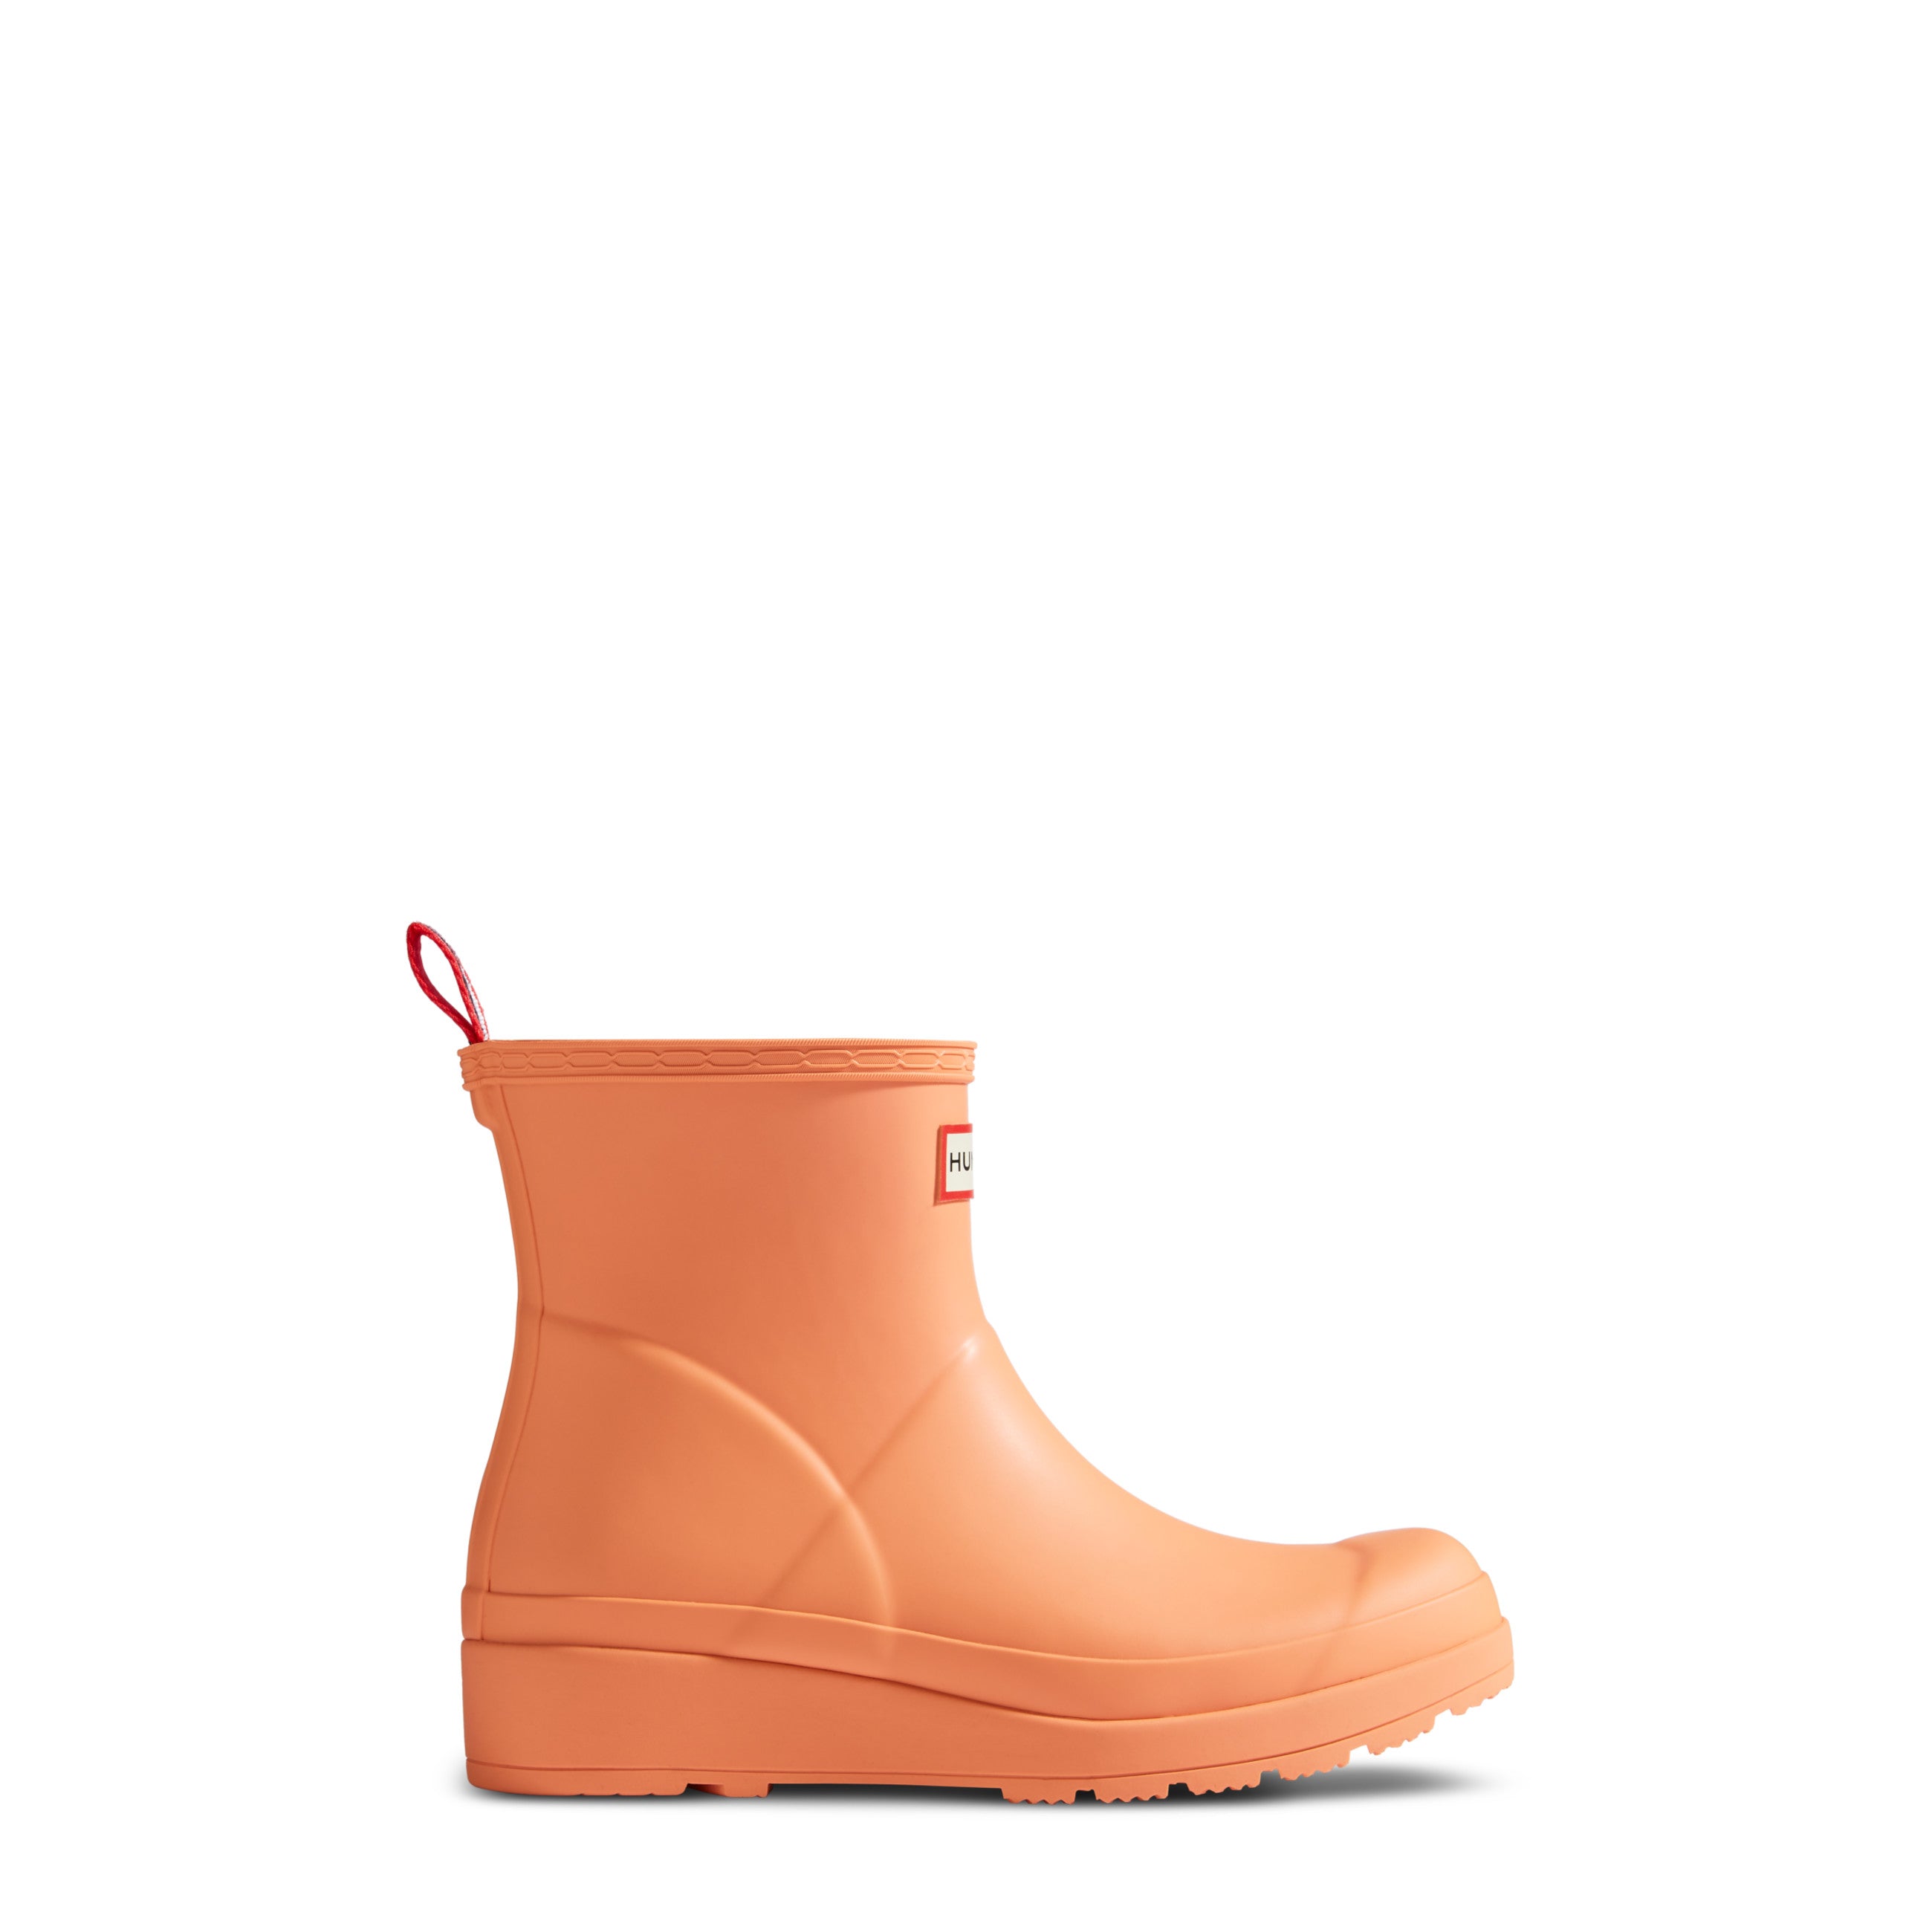 Women's PLAY™ Short Rain Boots - Hunter Boots Women's PLAY™ Short Rain Boots Optimistic Orange Hunter Boots Women's > Rain Boots > Play Boots